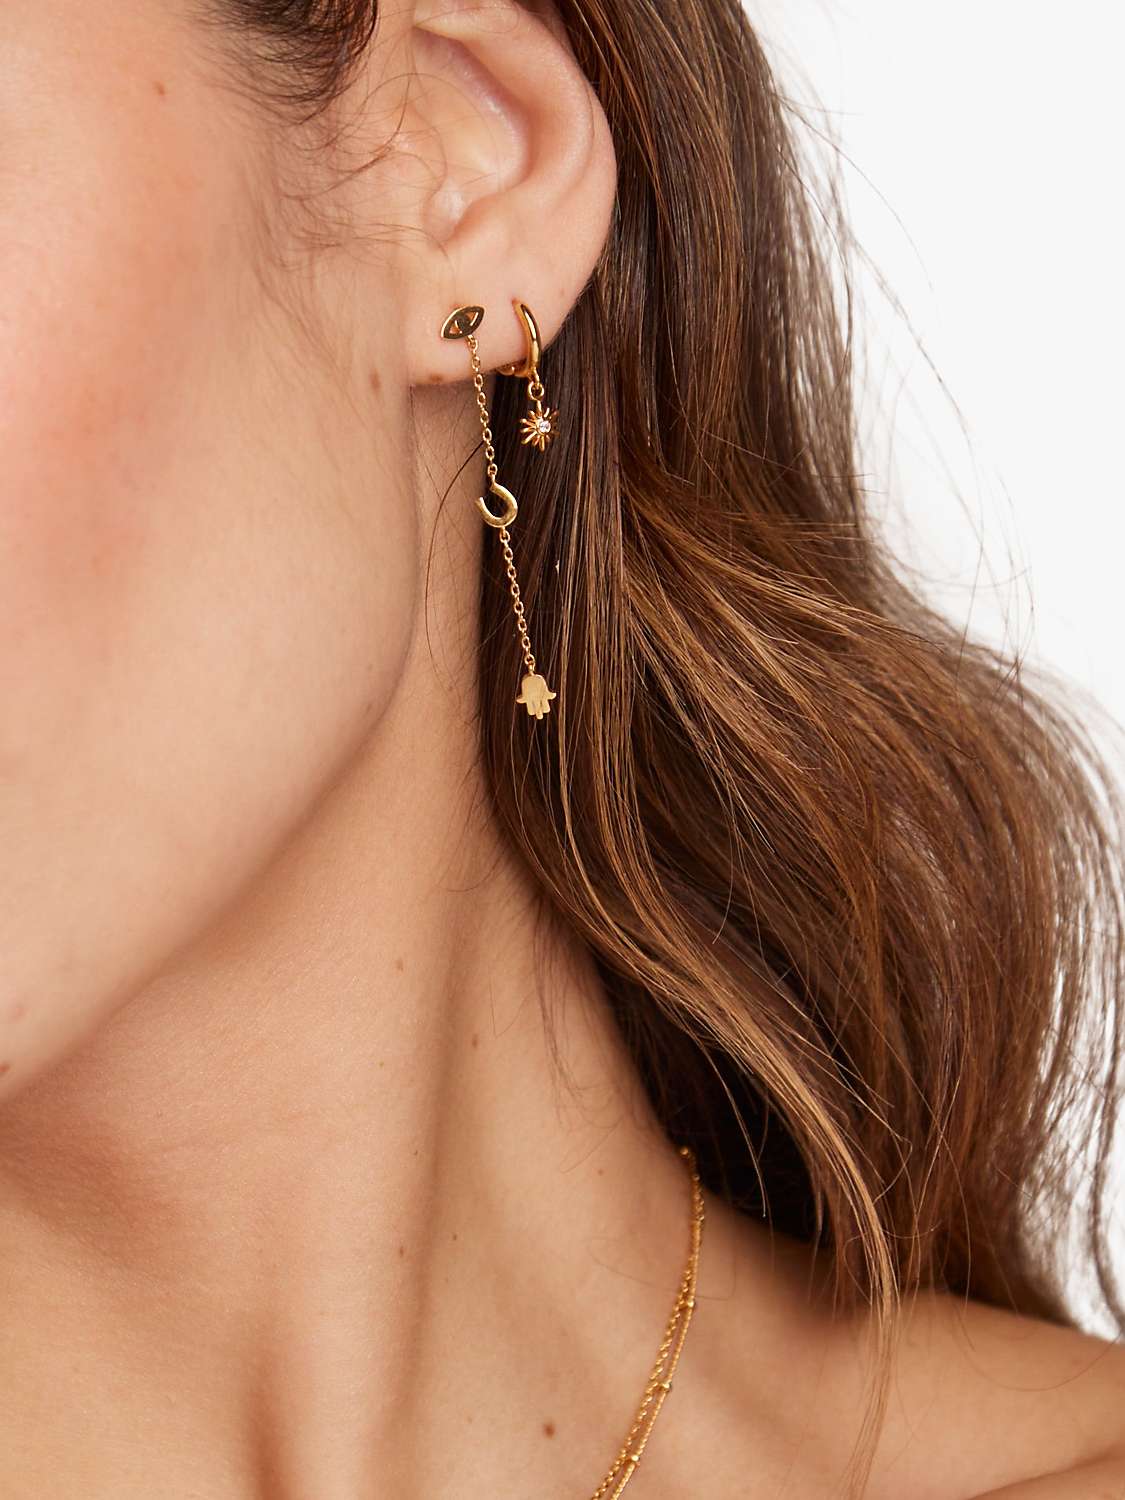 Buy Orelia Sunburst Charm Micro Hoop Earrings, Gold Online at johnlewis.com